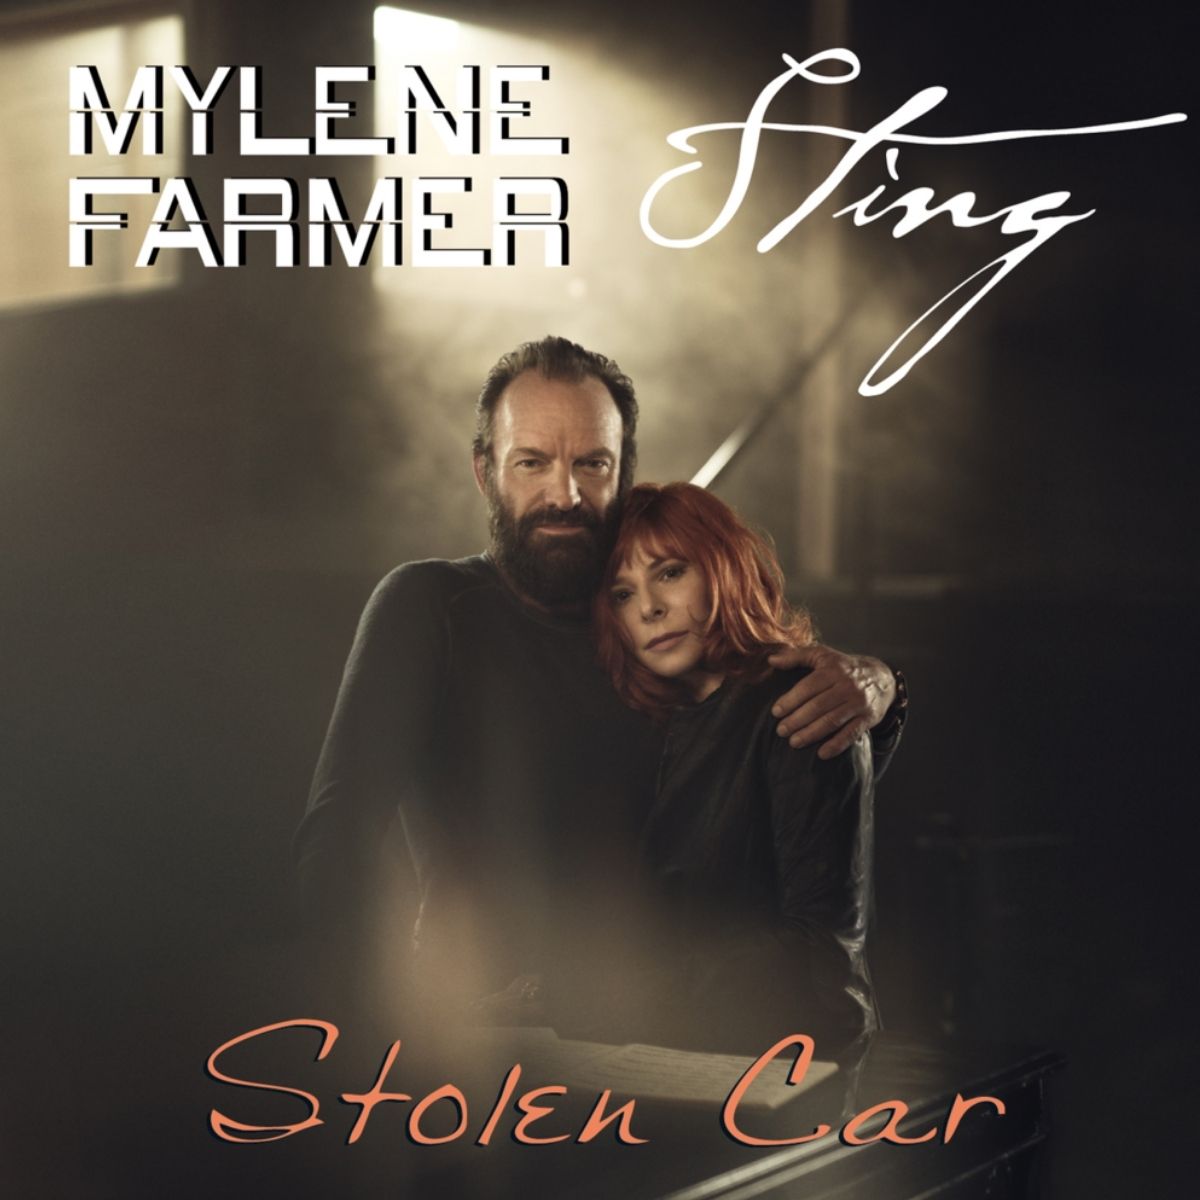 Couverture de la chanson "Stolen Car" de Sting et Mylene Farmer